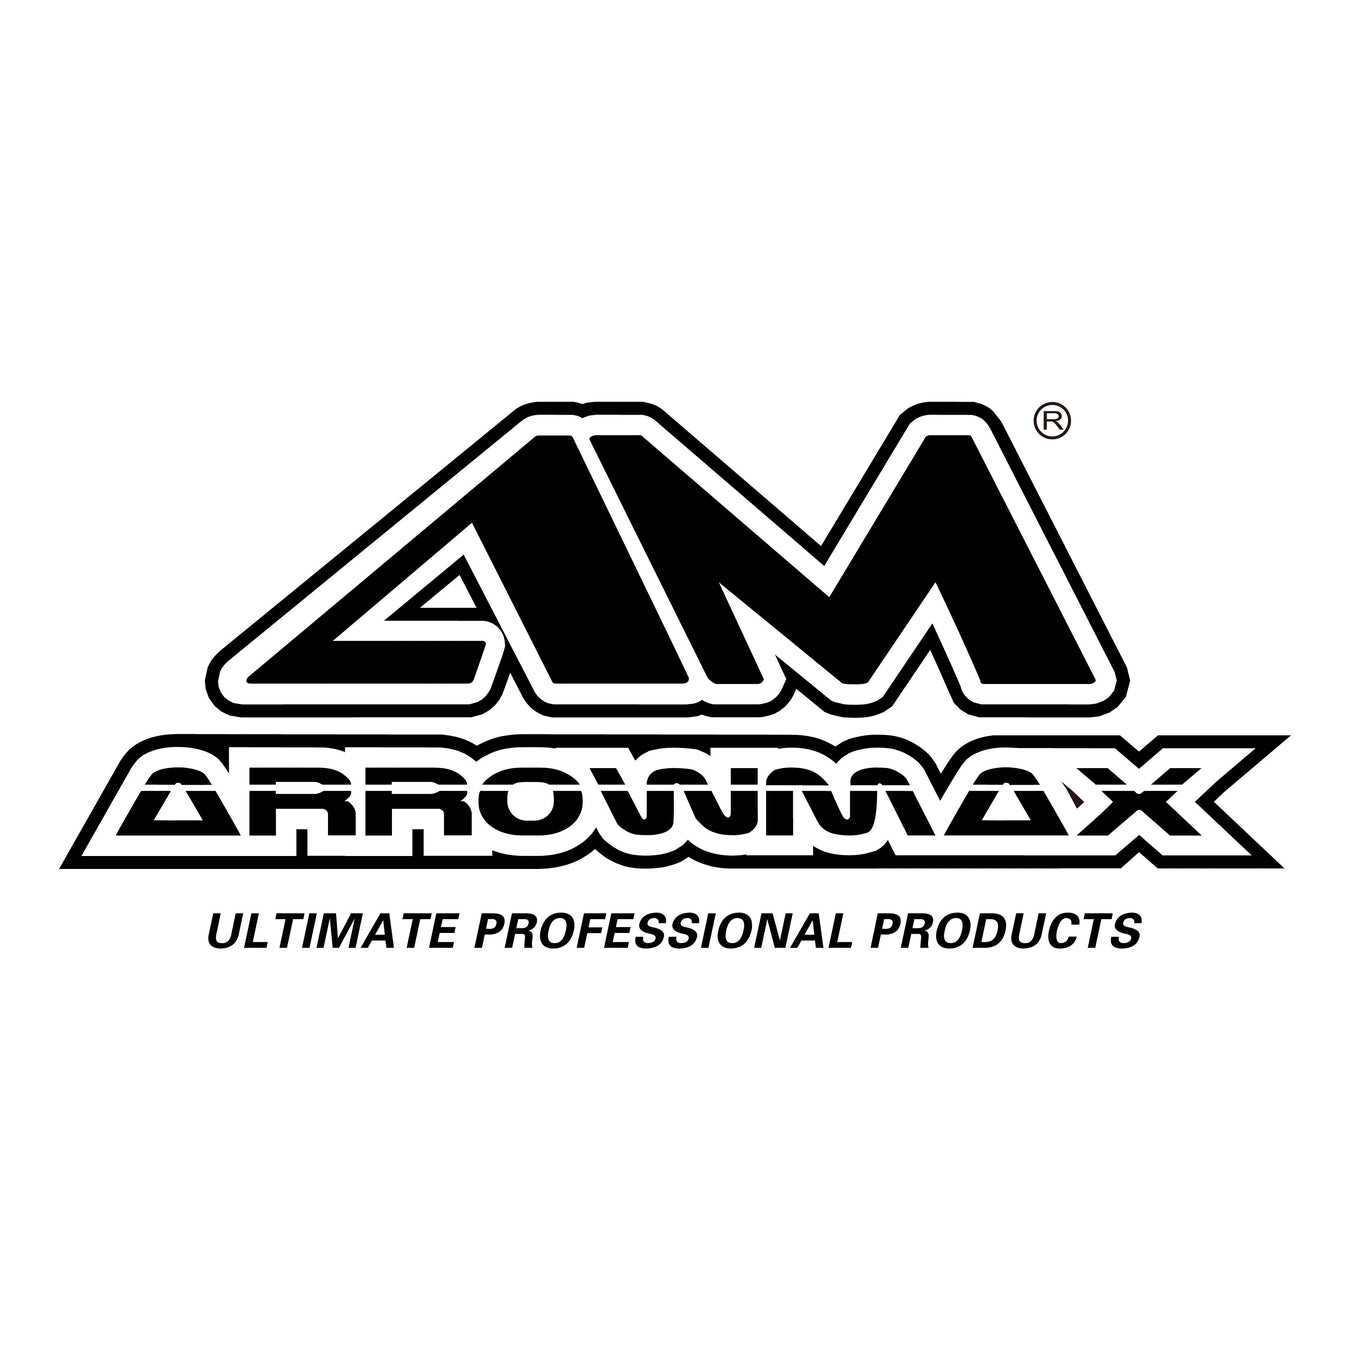 Arrowmax Smart tools